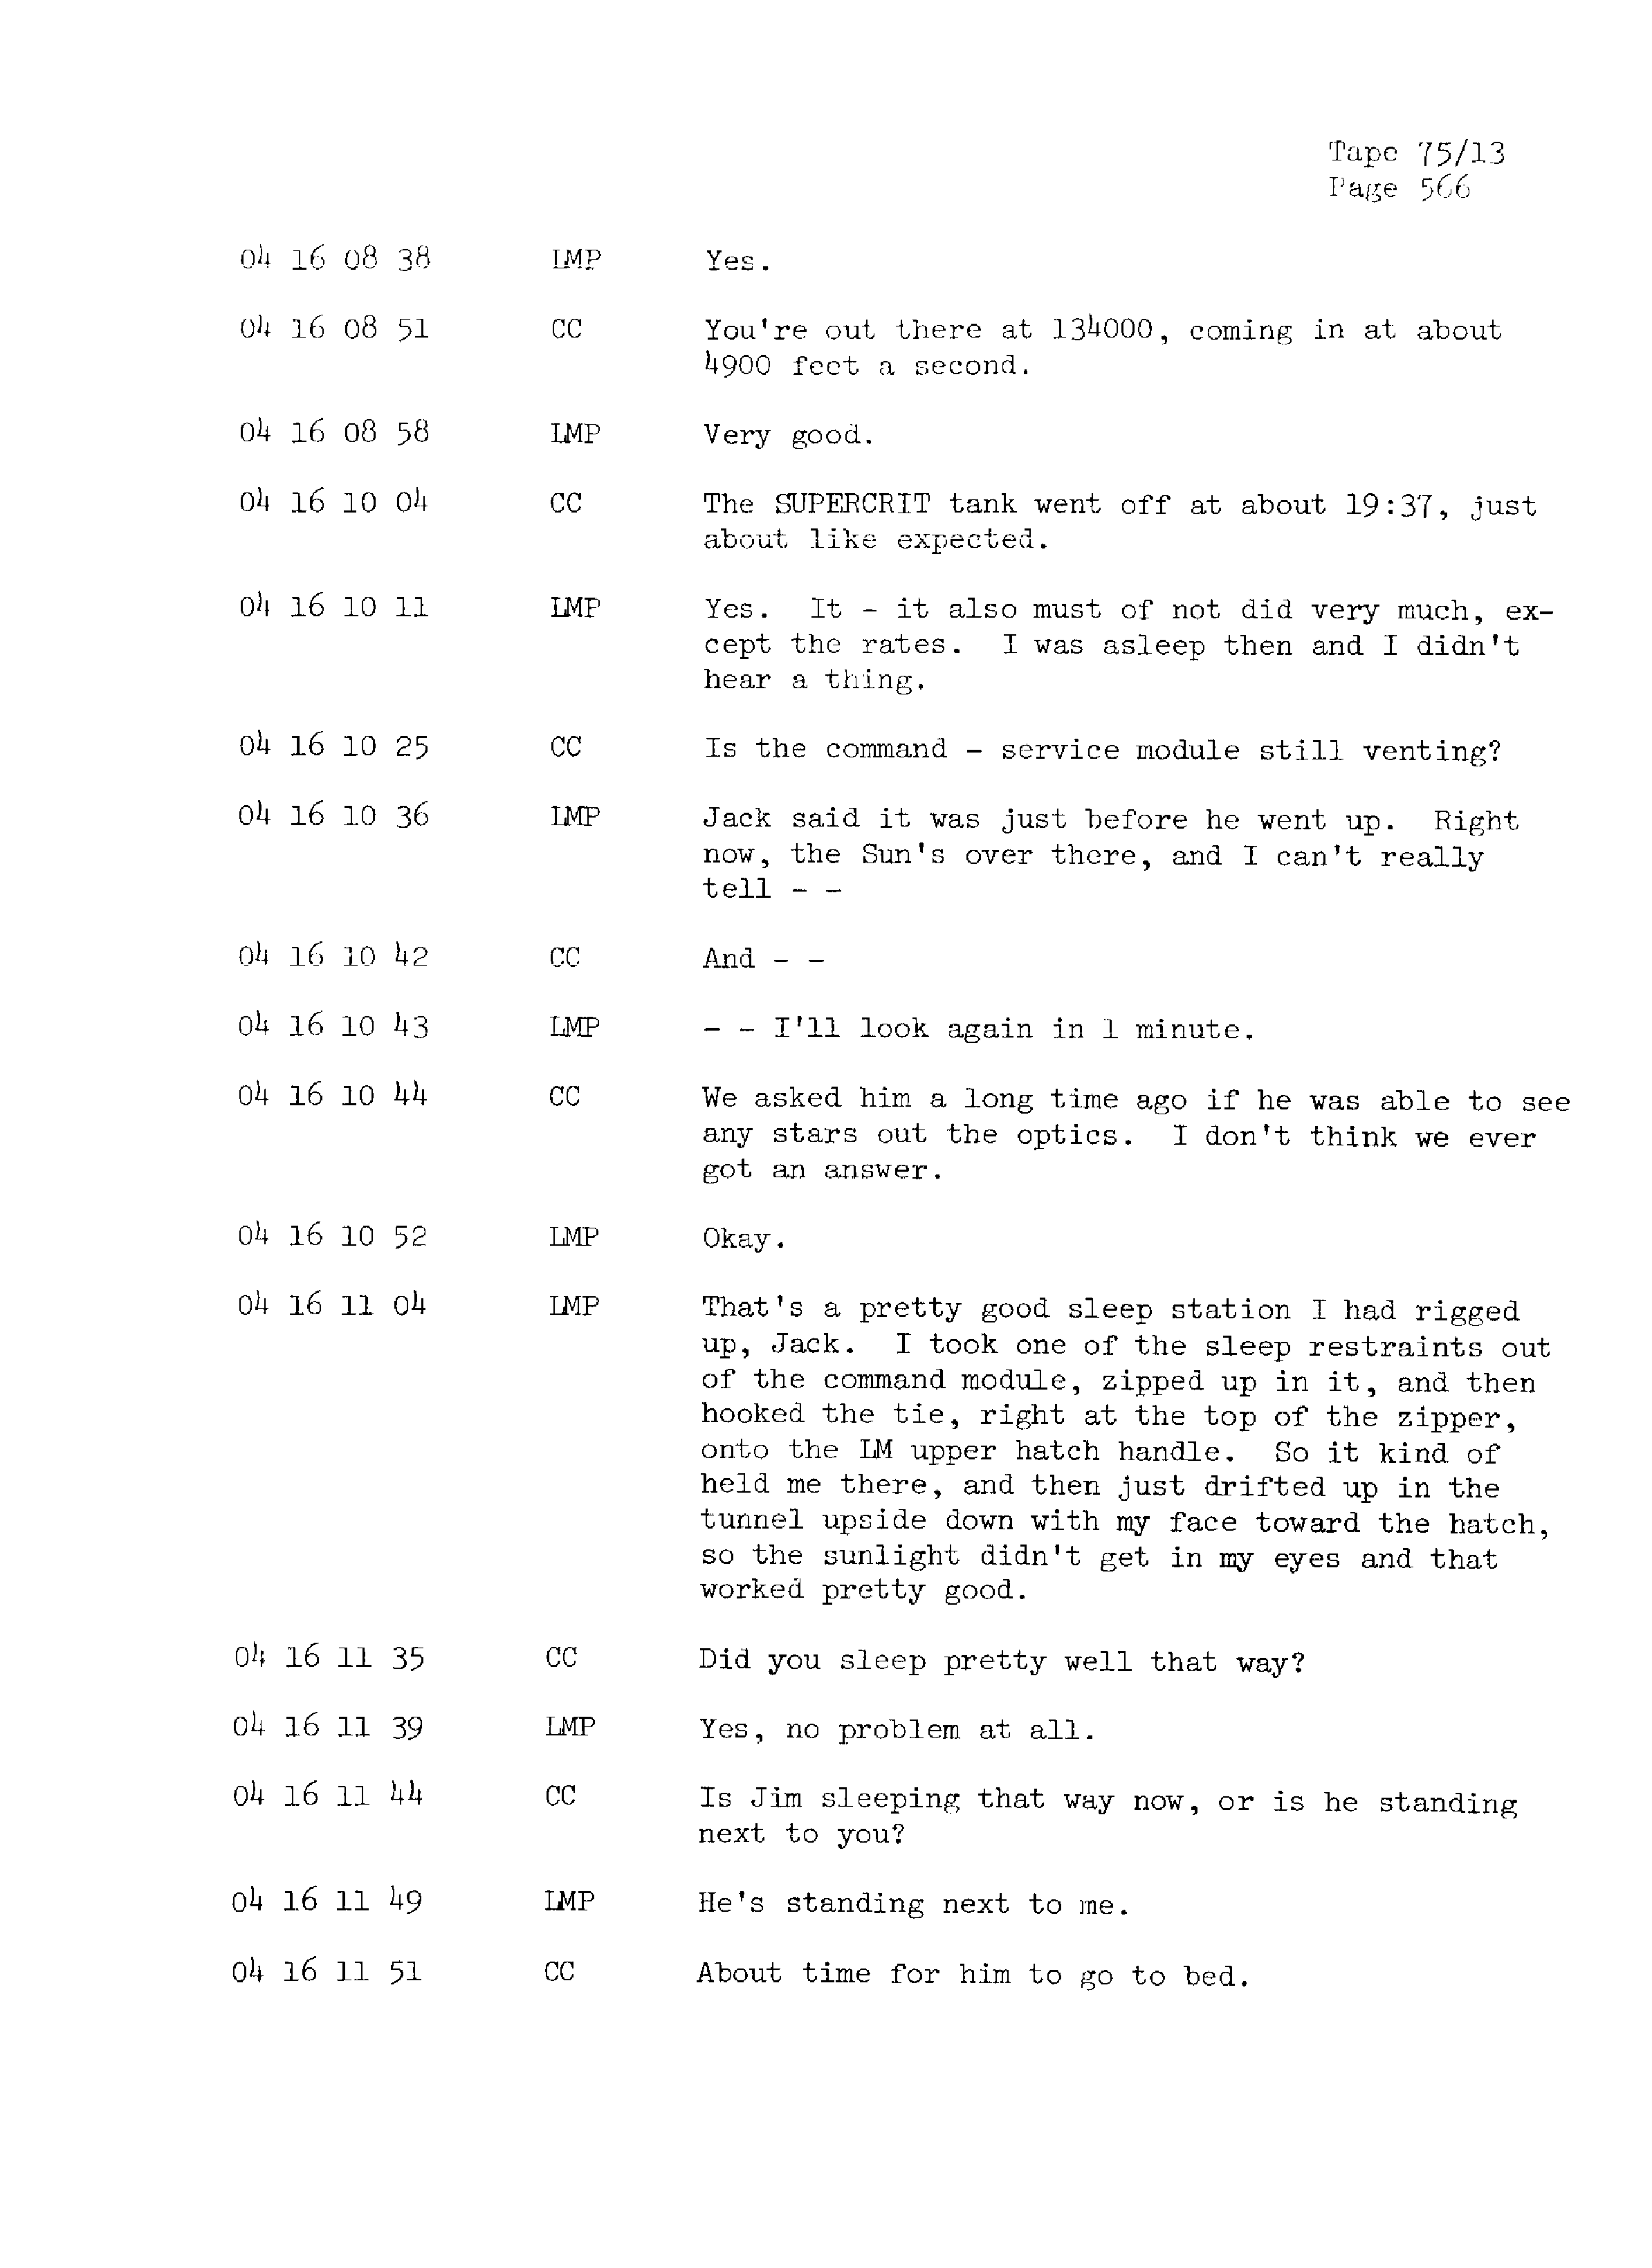 Page 573 of Apollo 13’s original transcript